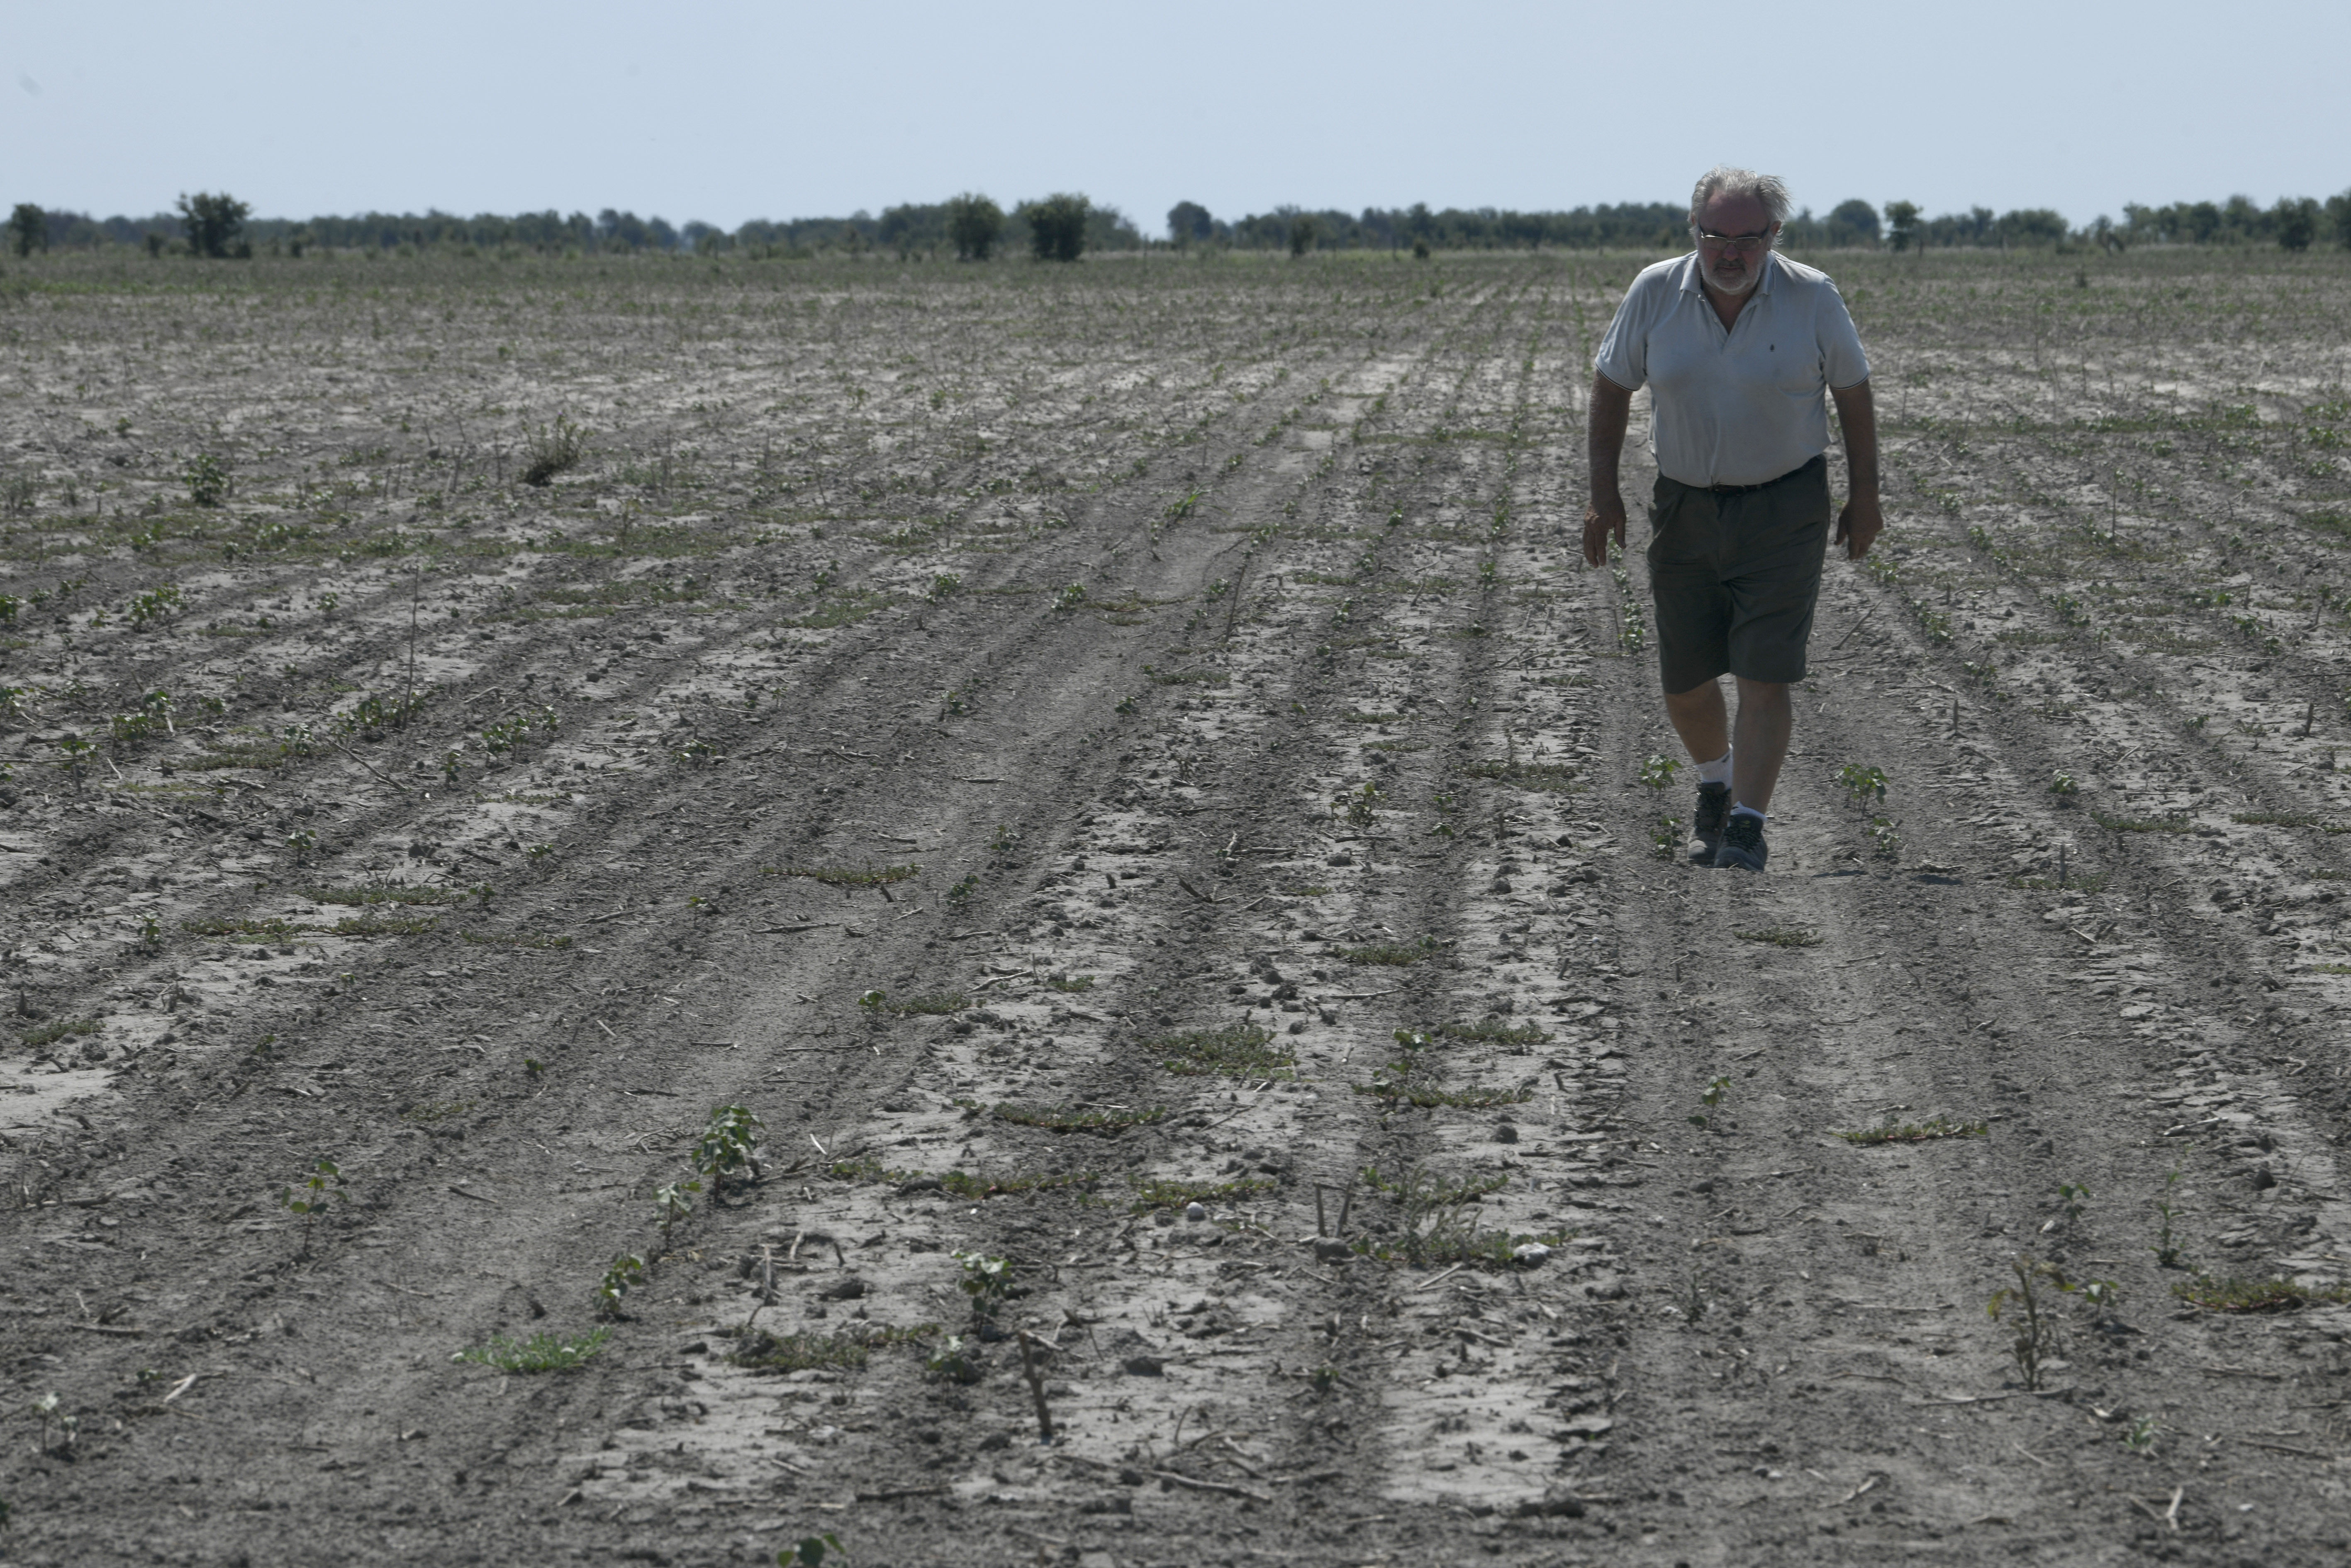 Pablo Giailevra camina en su campo de algodón afectado por la sequía en Tostado, provincia de Santa Fe, Argentina, el miércoles 18 de enero de 2023. (AP Foto/Gustavo Garello)